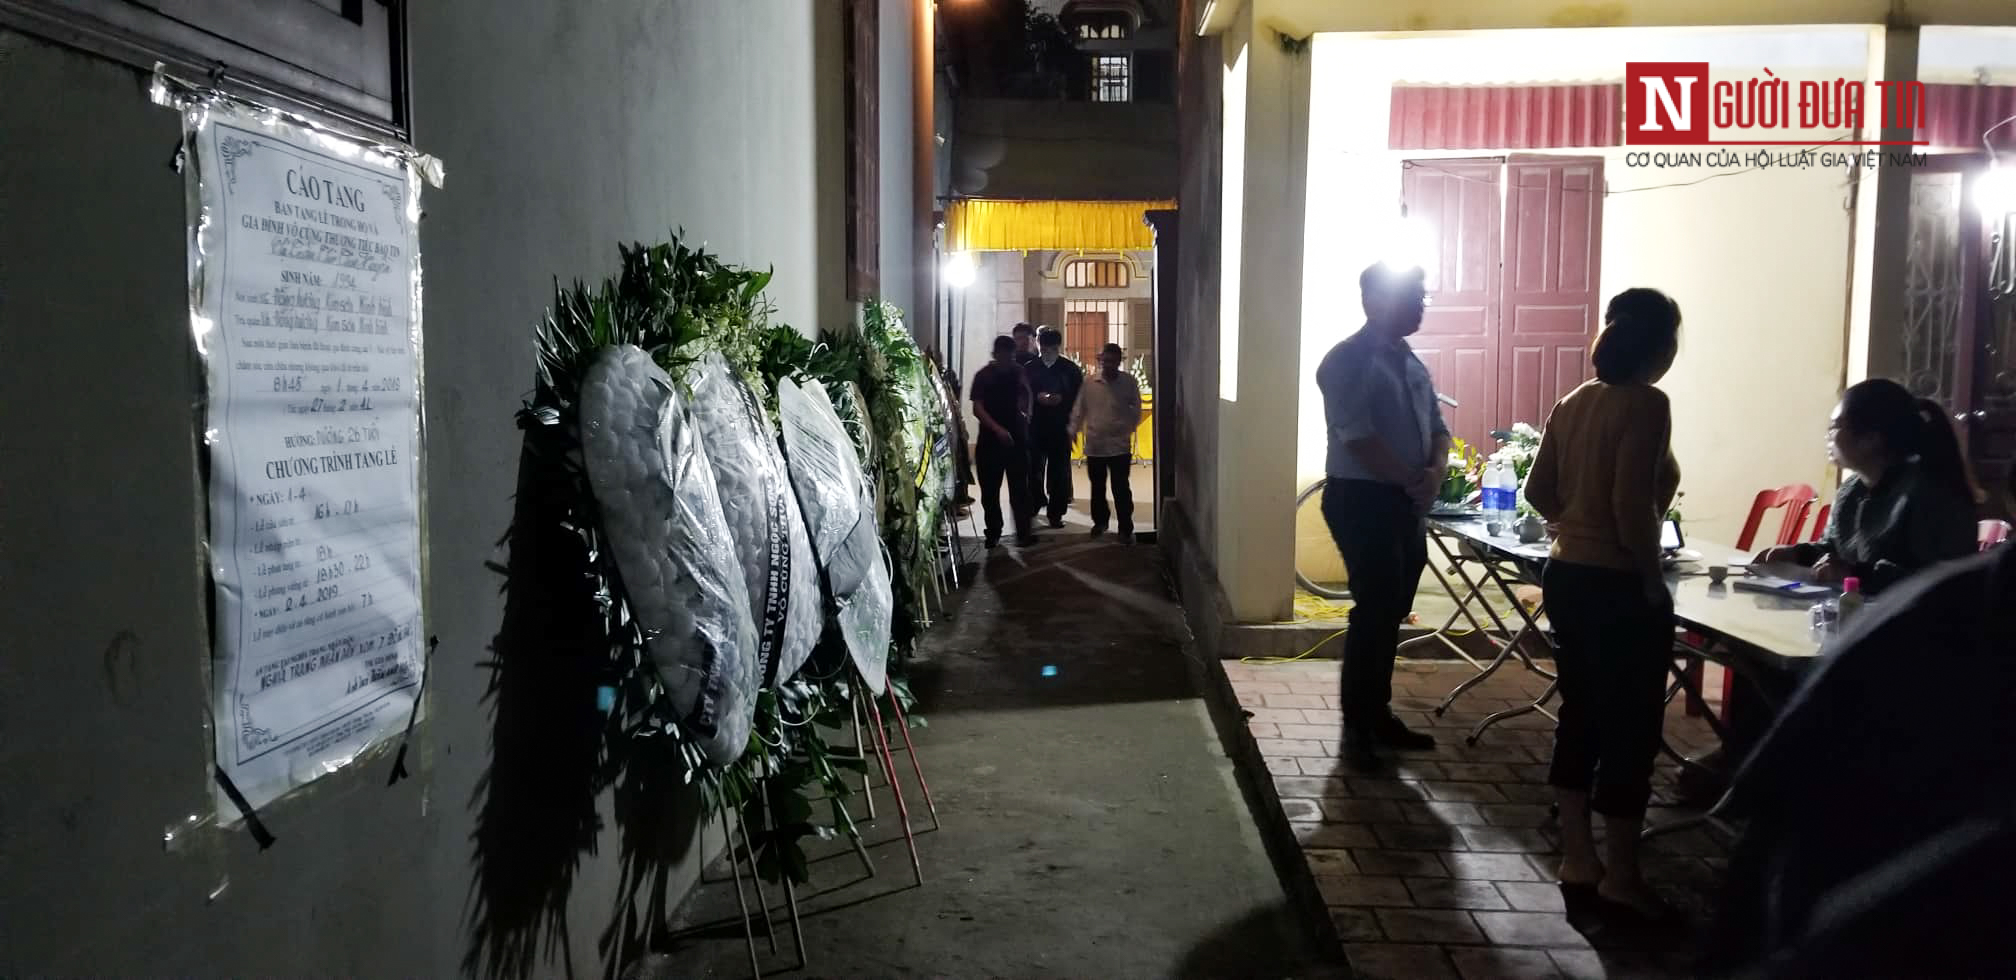 Nạn nhân Trần Thị Thu H. đang được tổ chức tang lễ tại nhà.